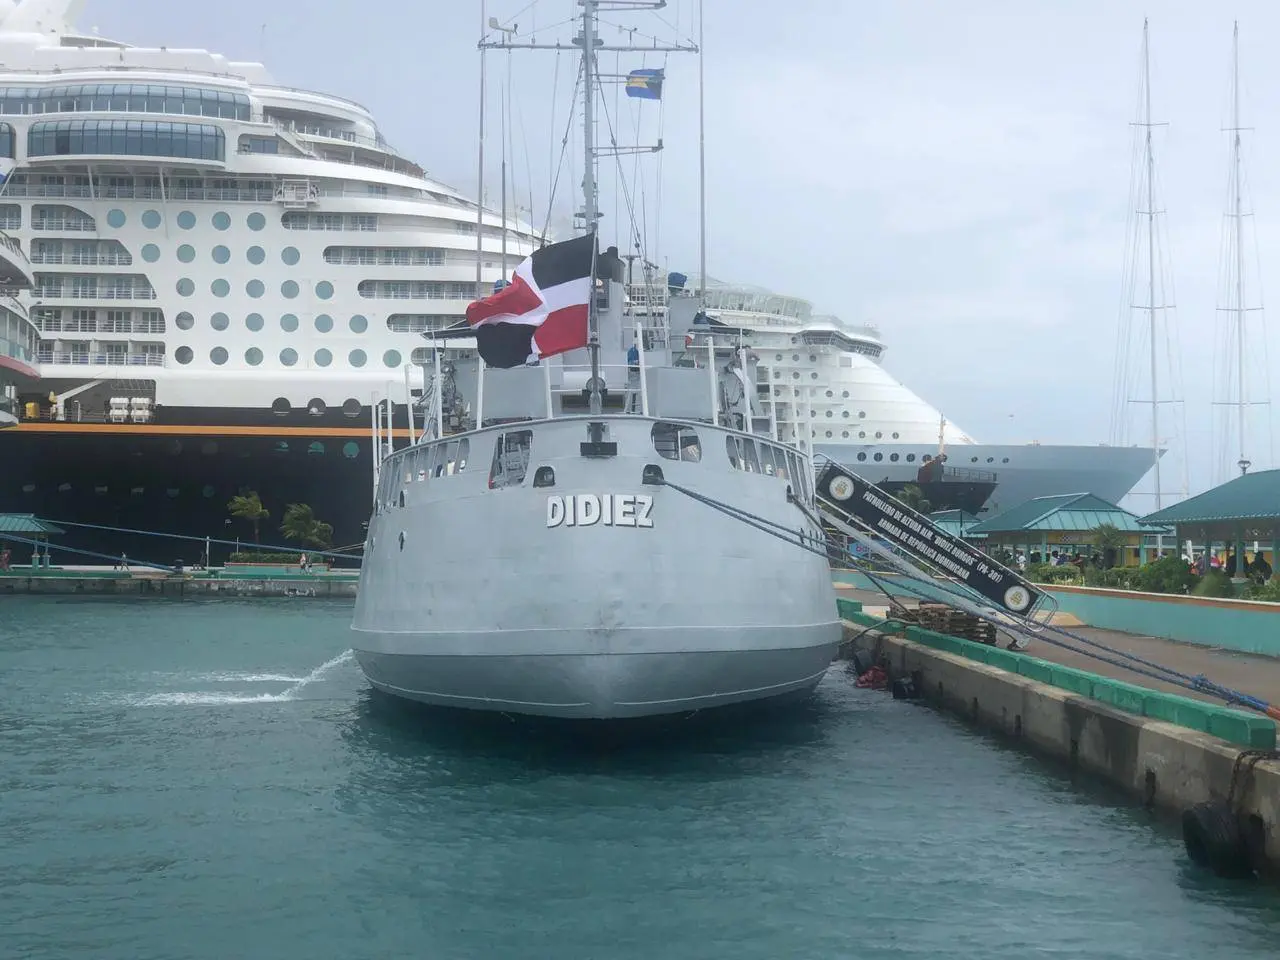 Llega a Las Bahamas el buque de la Armada Dominicana con donativos tras huracán Dorian